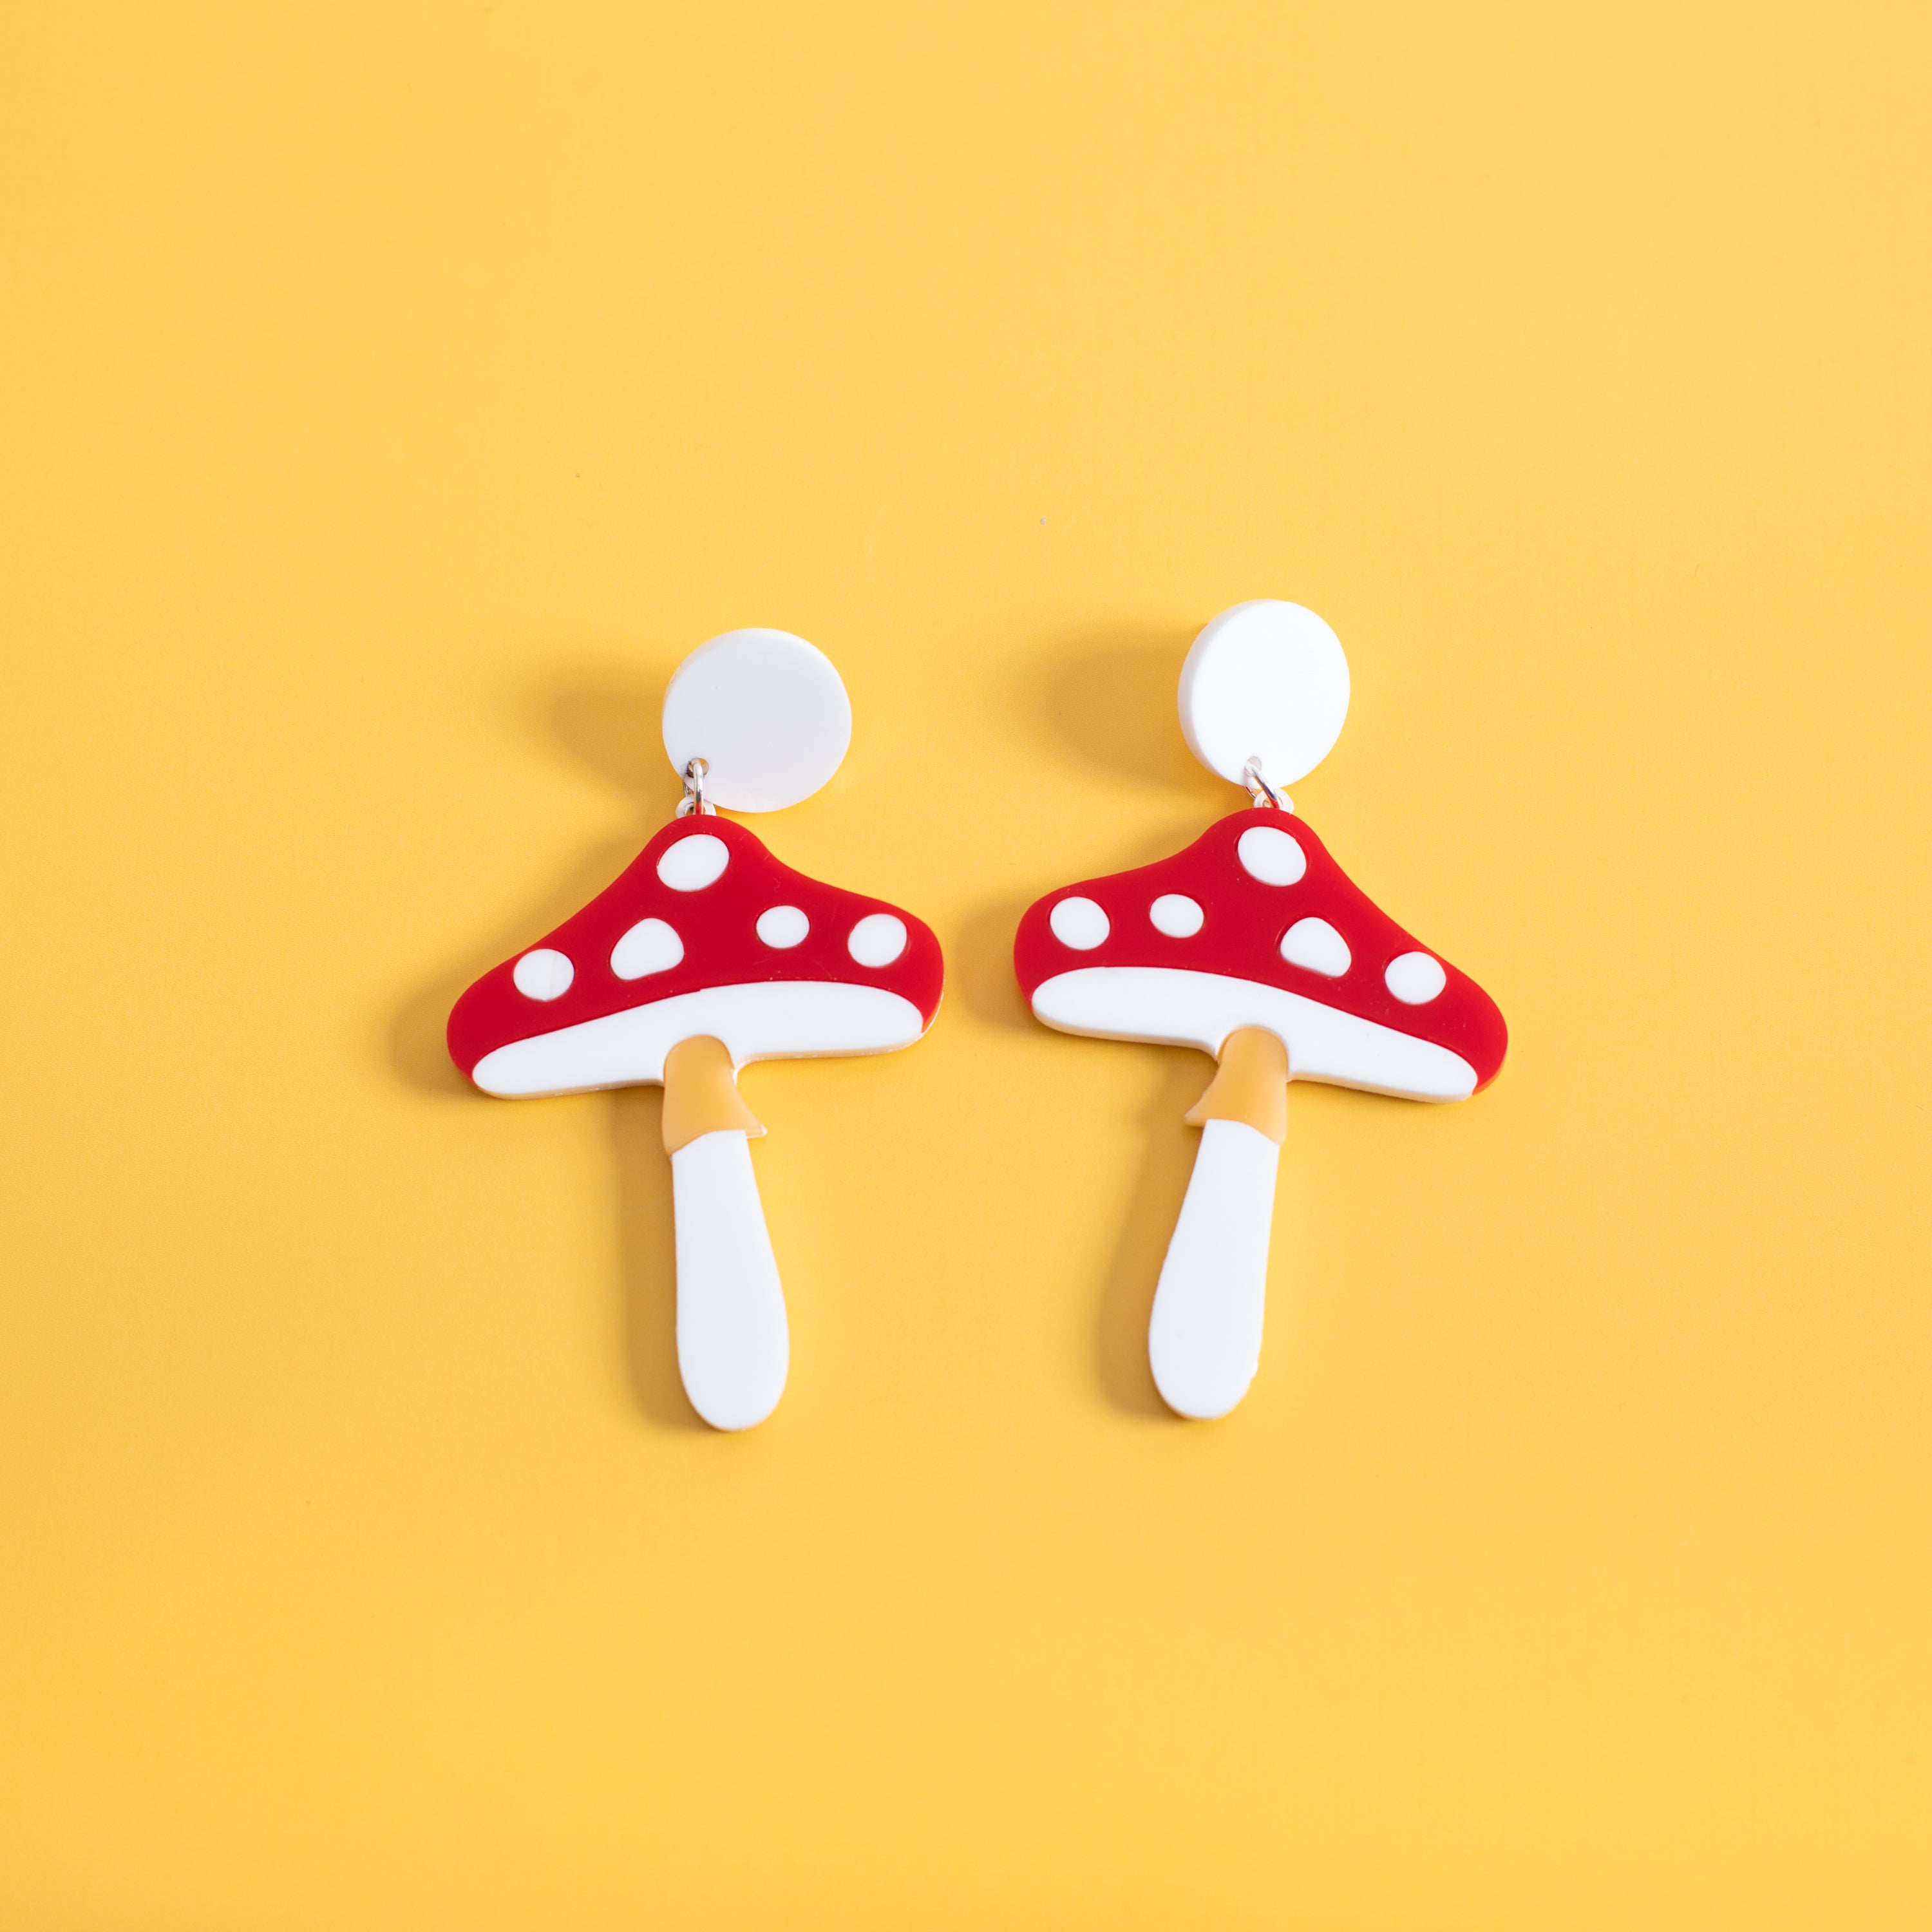 The Magic Mushroom Stud Earrings,EarringMindFlowers